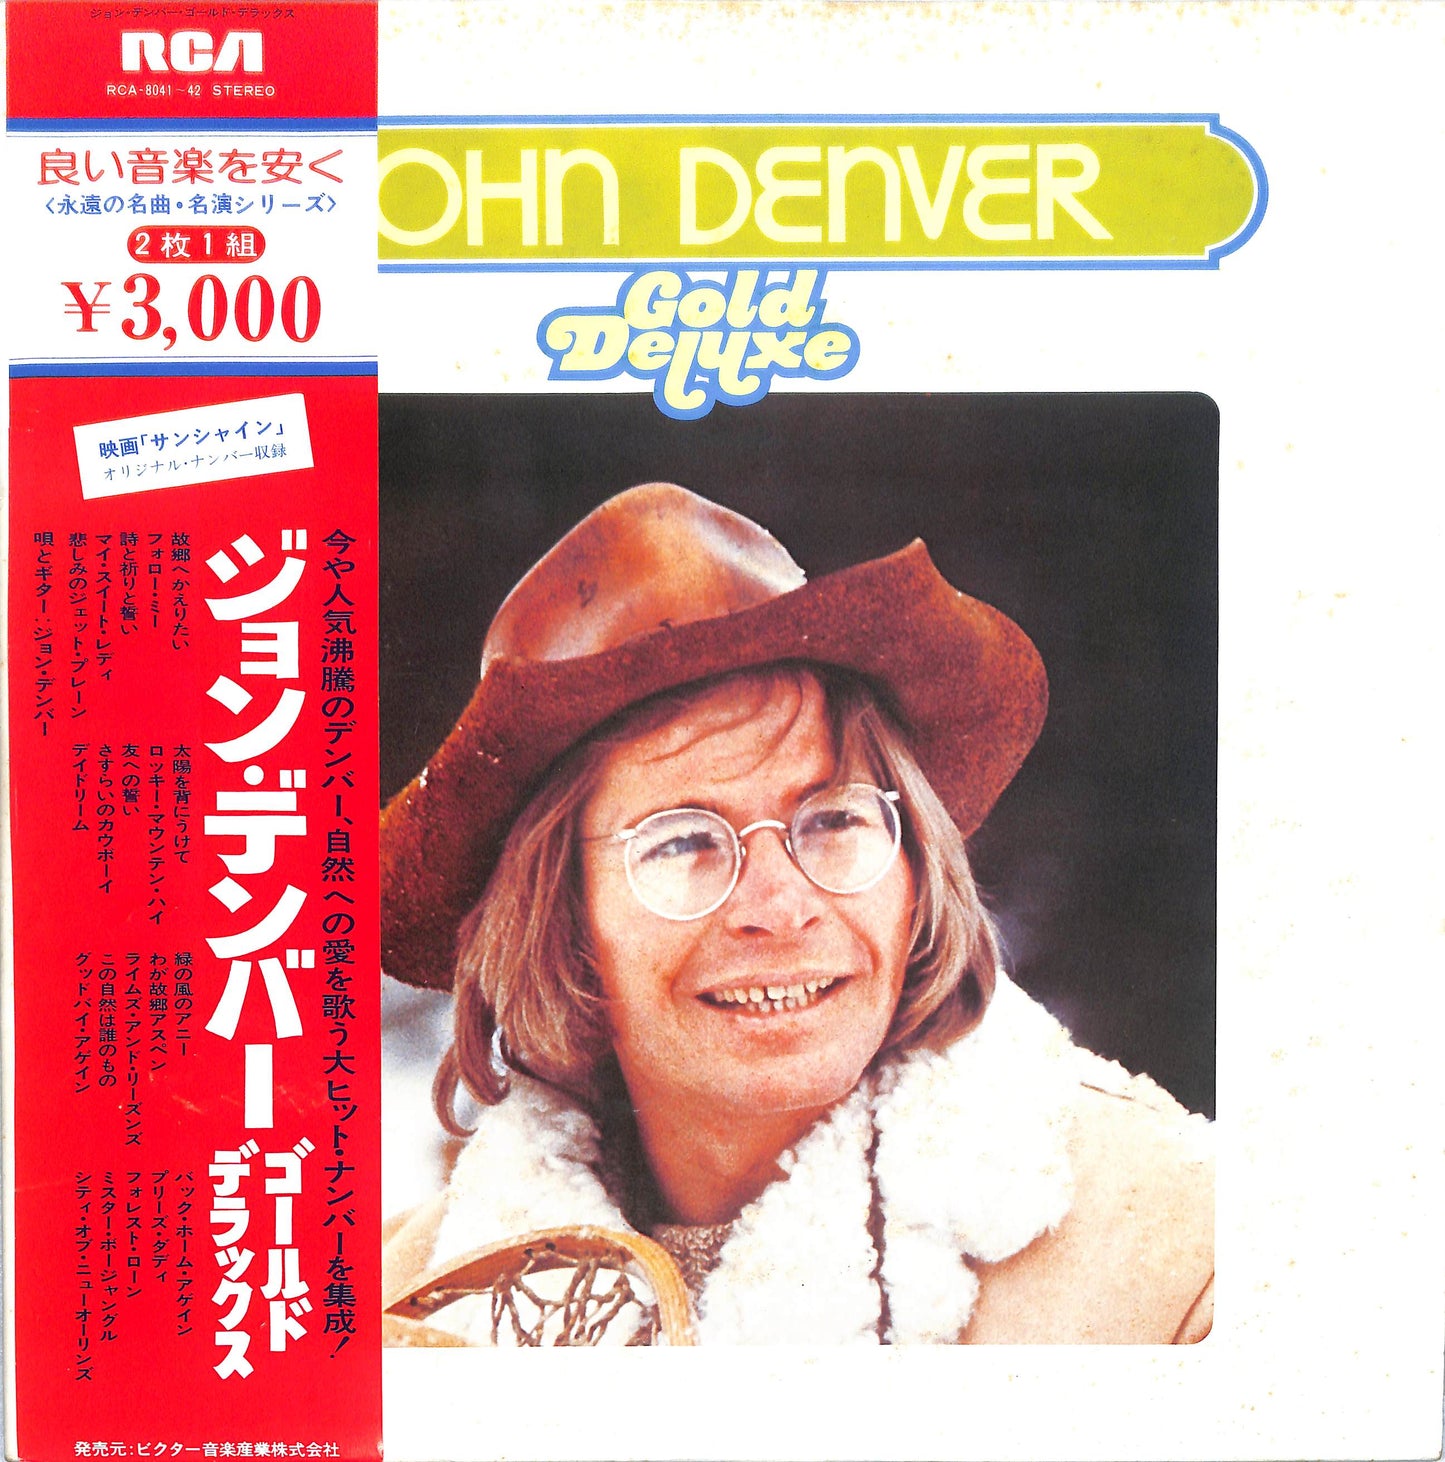 JOHN DENVER - Gold Deluxe